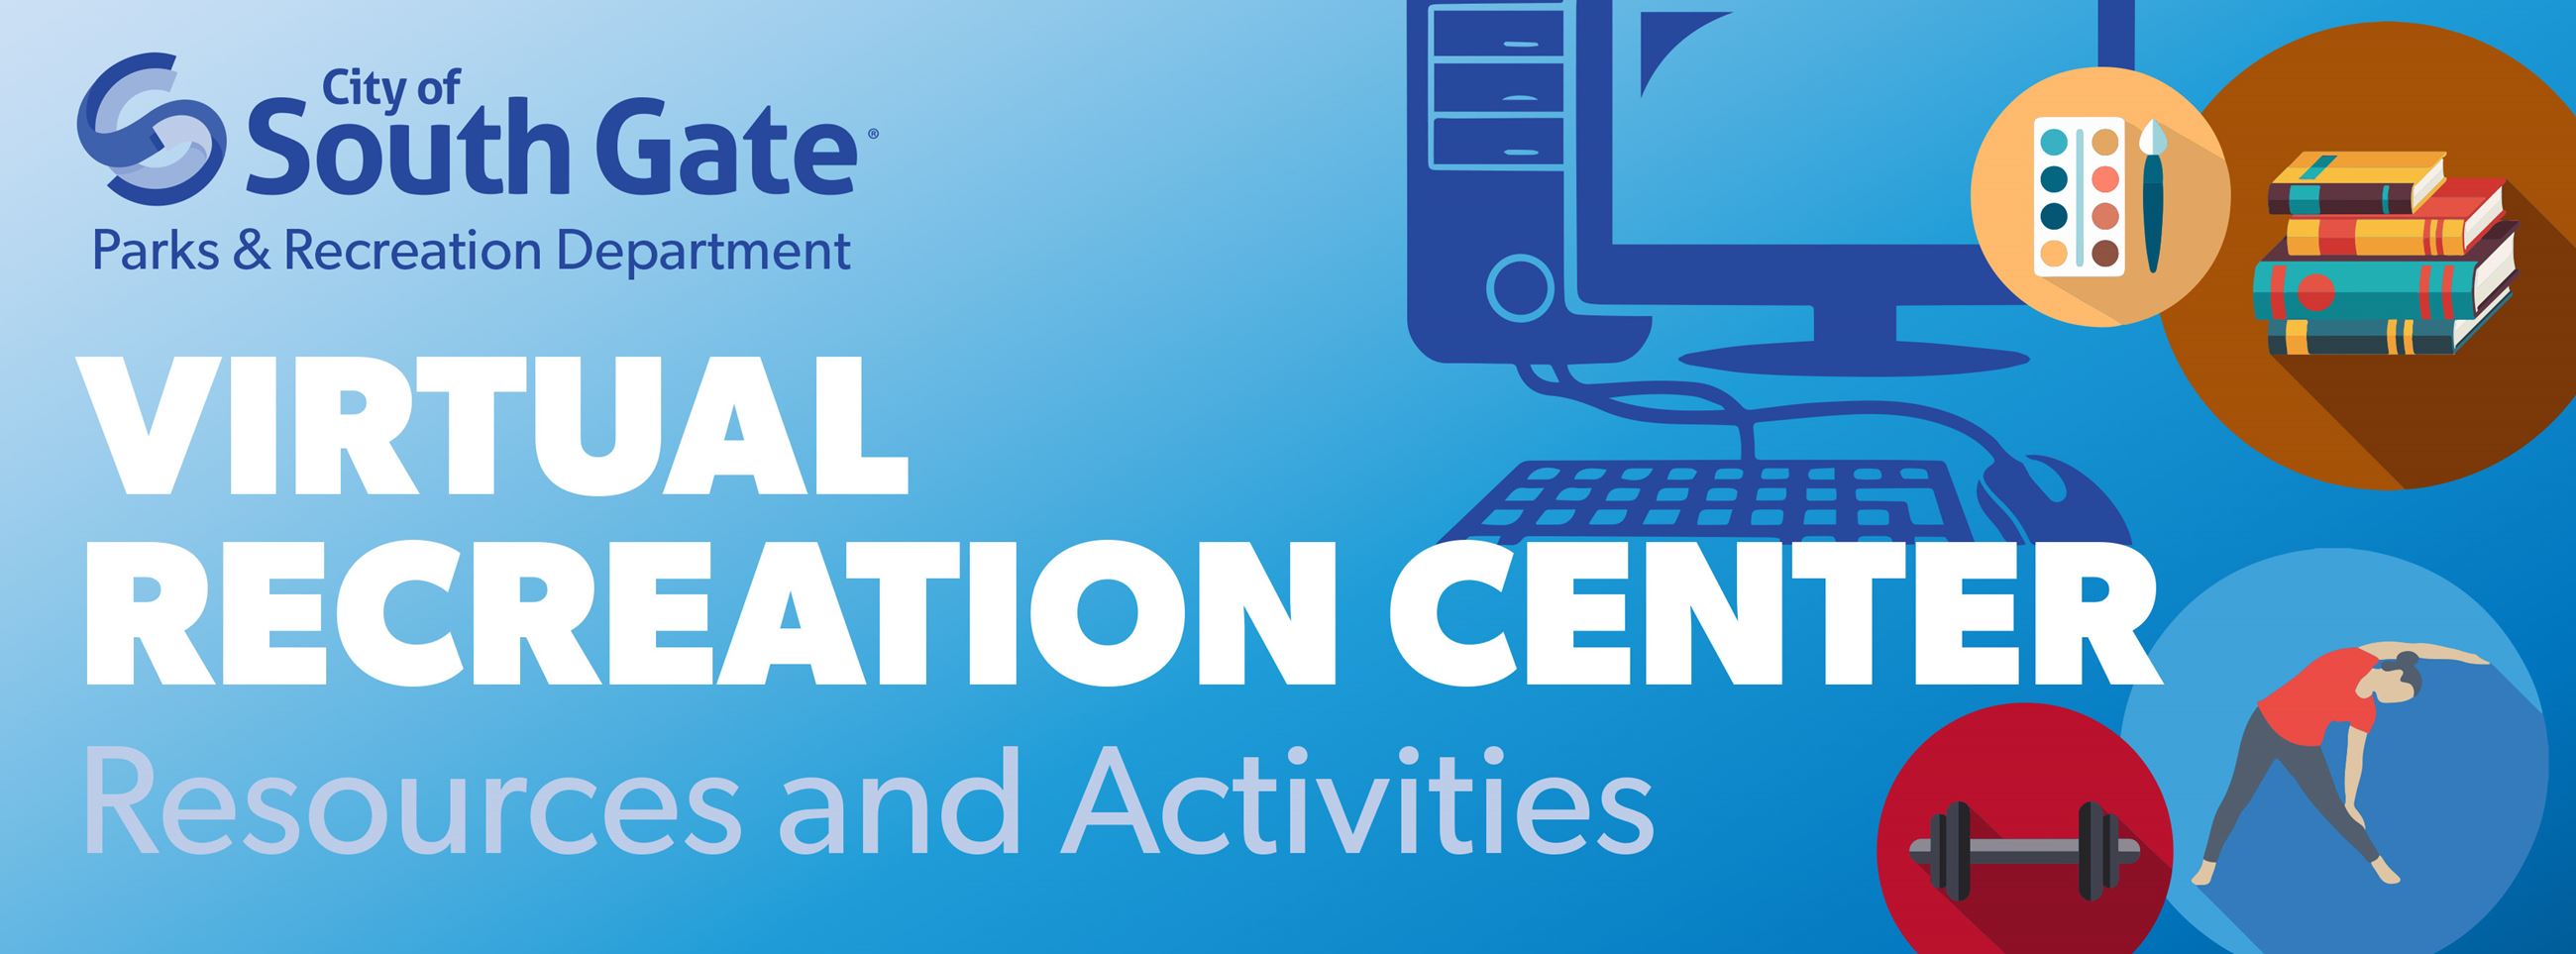 SG Virtual Recreation Center header